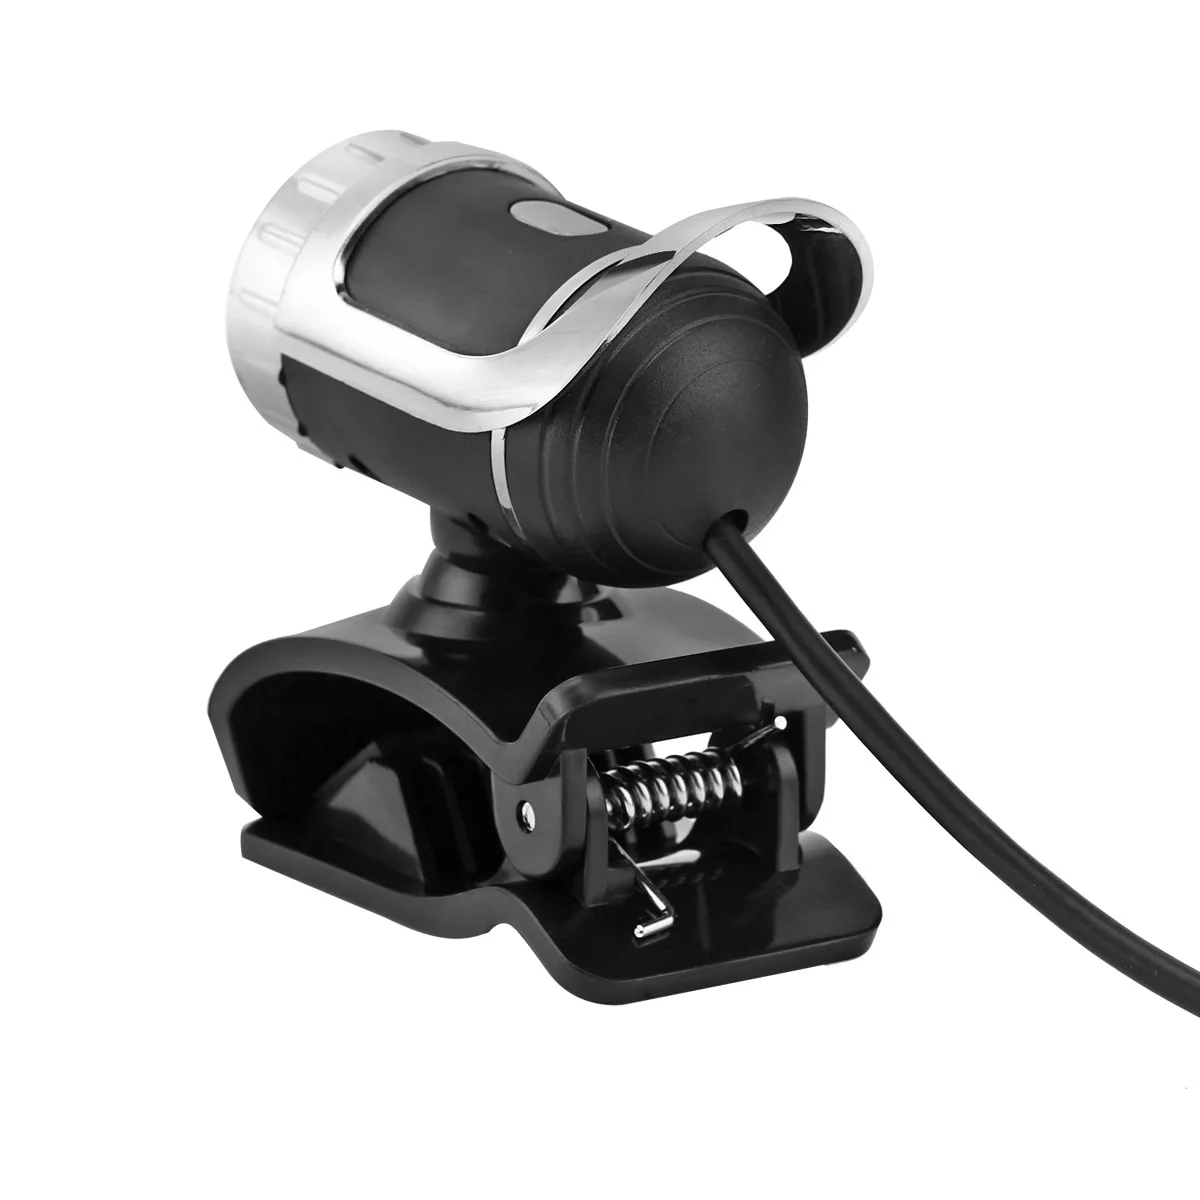 Веб-камера USB 12 мегапиксельная HD камера Веб-камера 360 градусов микрофон клип-на для Skype компьютер ноутбук Настольный черный